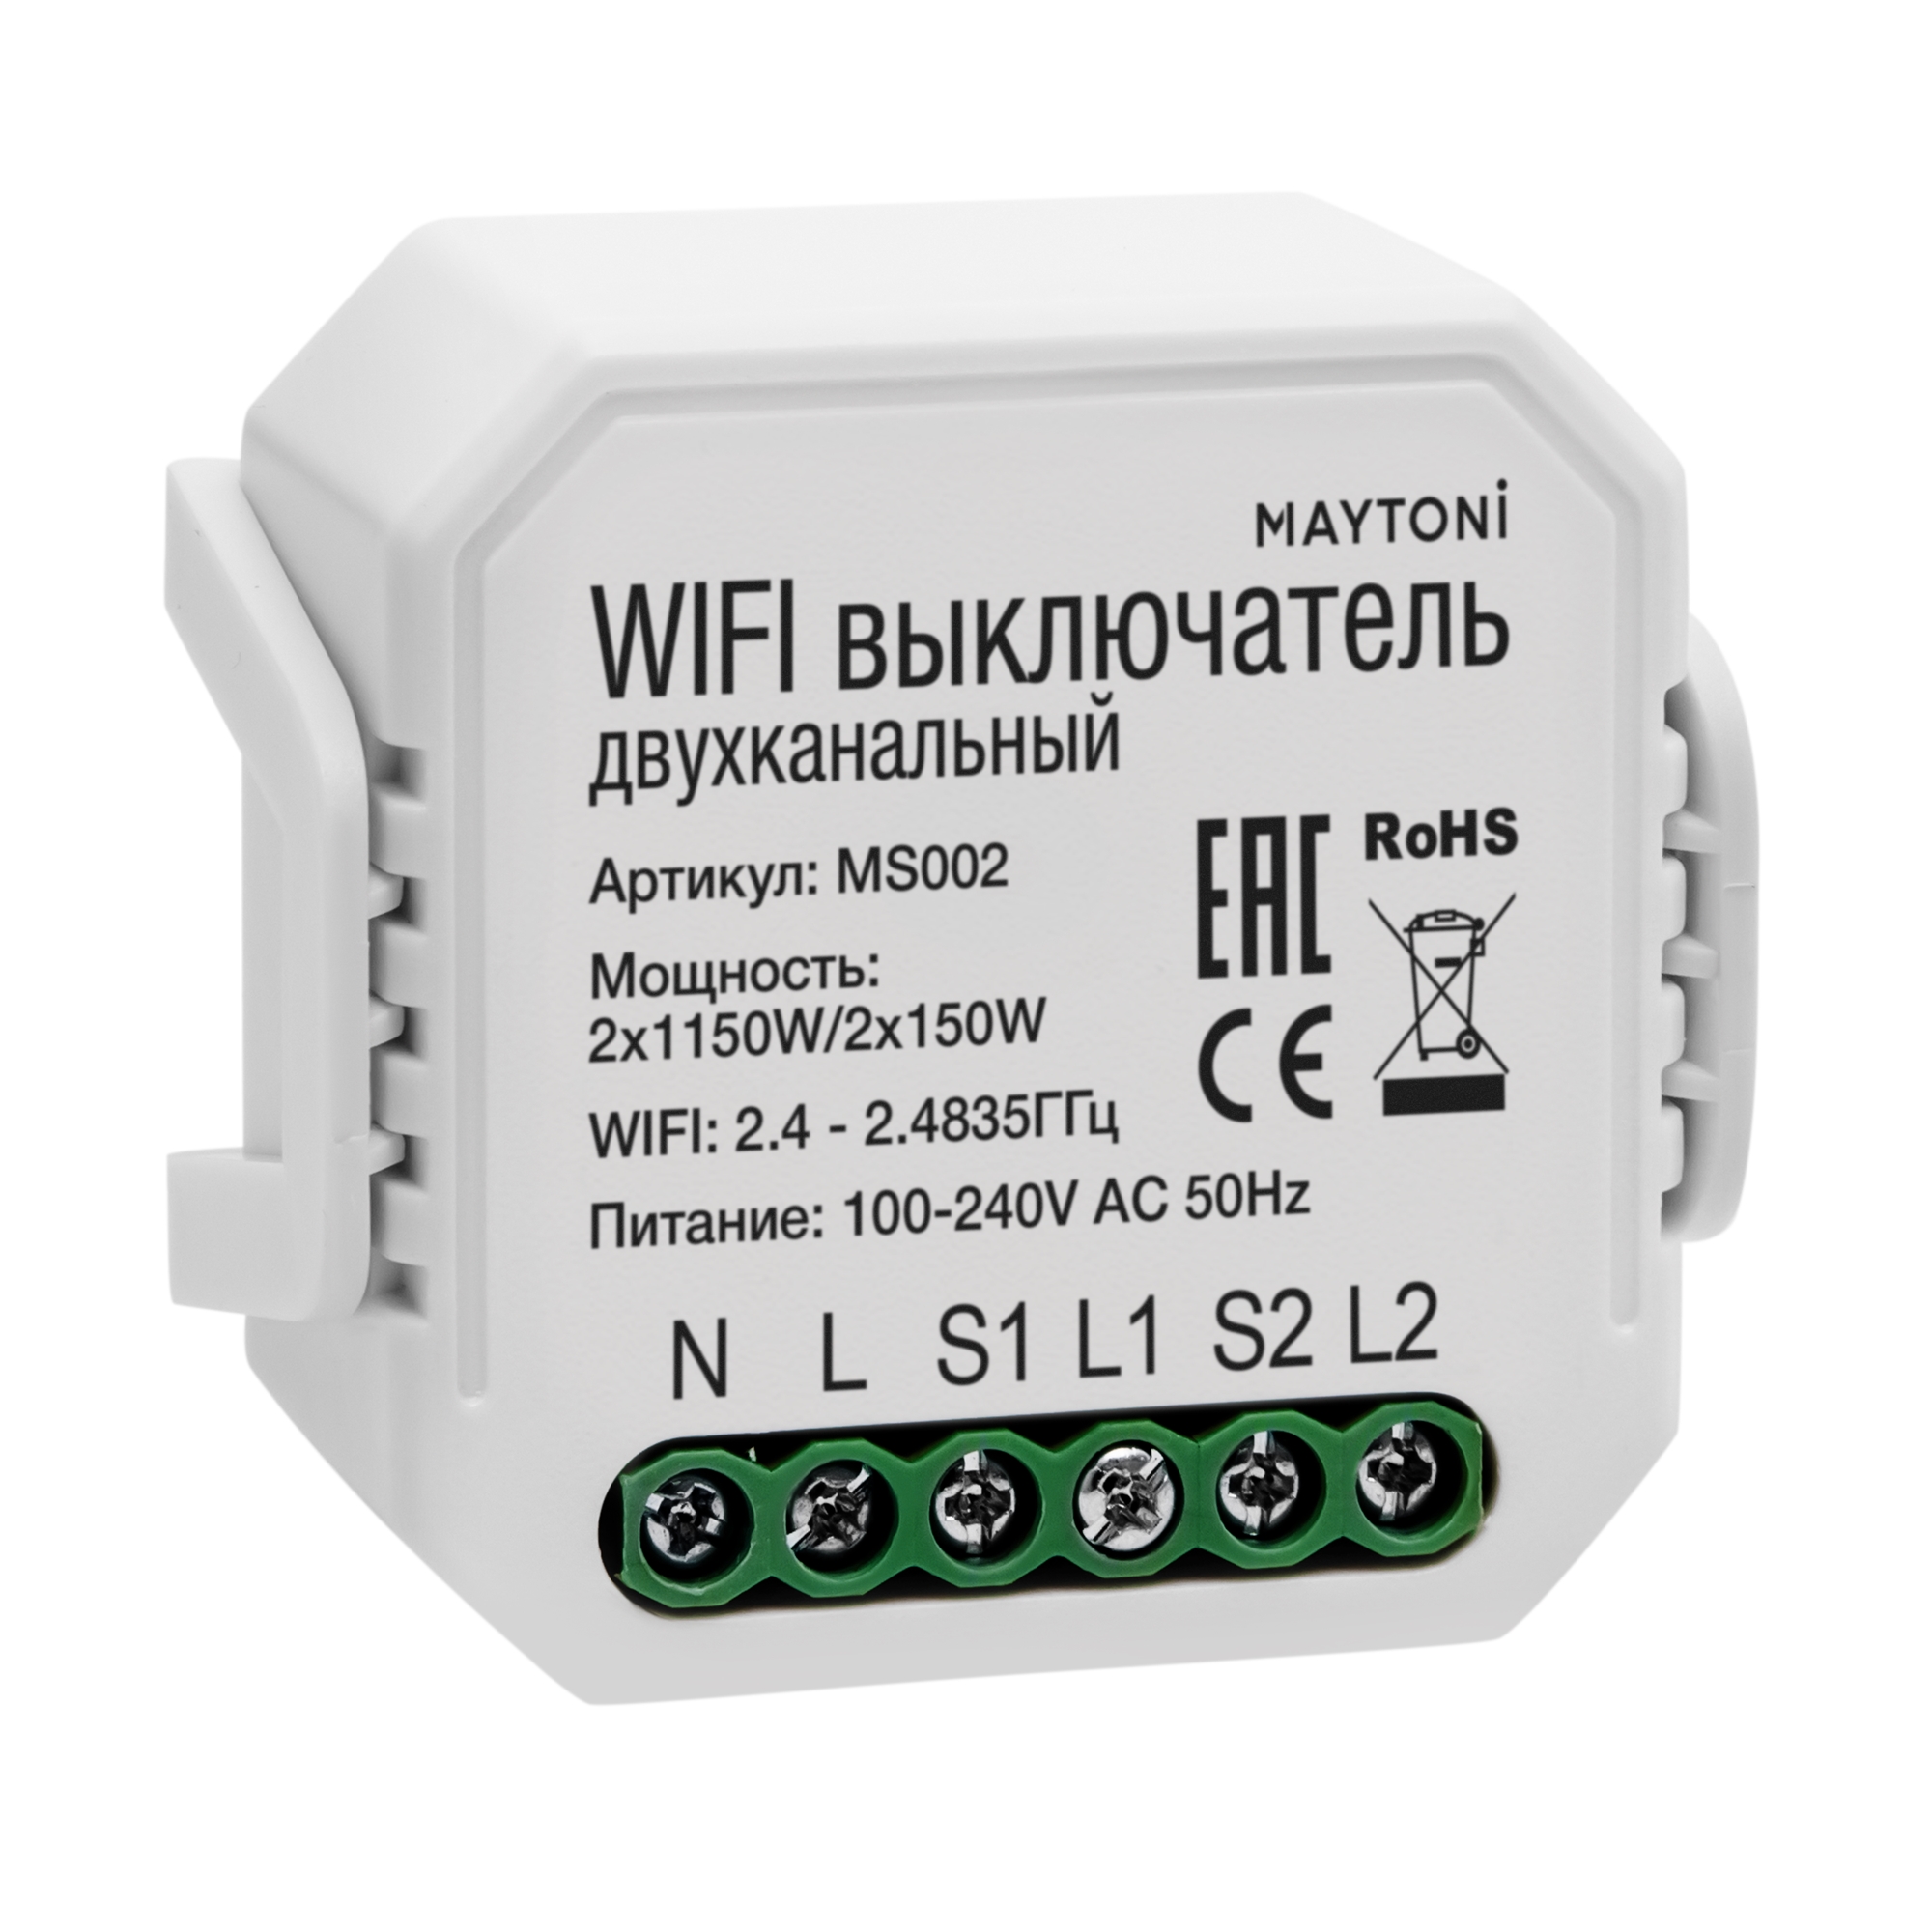 Wi-Fi выключатель двухканальный Wi-Fi 2x150 MS002